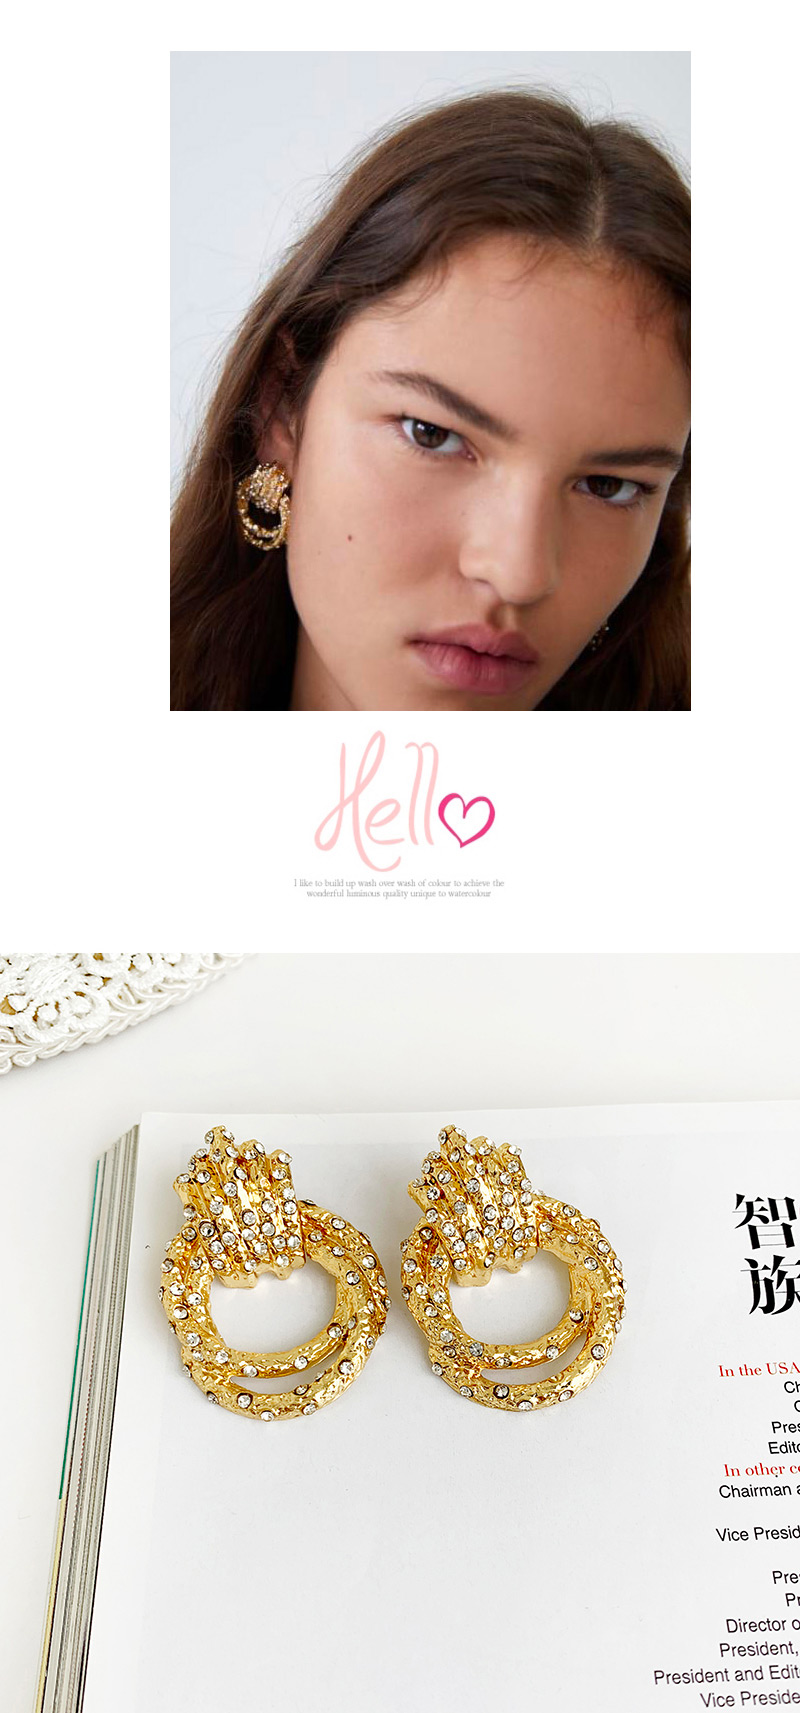 Fashion Gold Alloy Studded Geometric Earrings,Drop Earrings